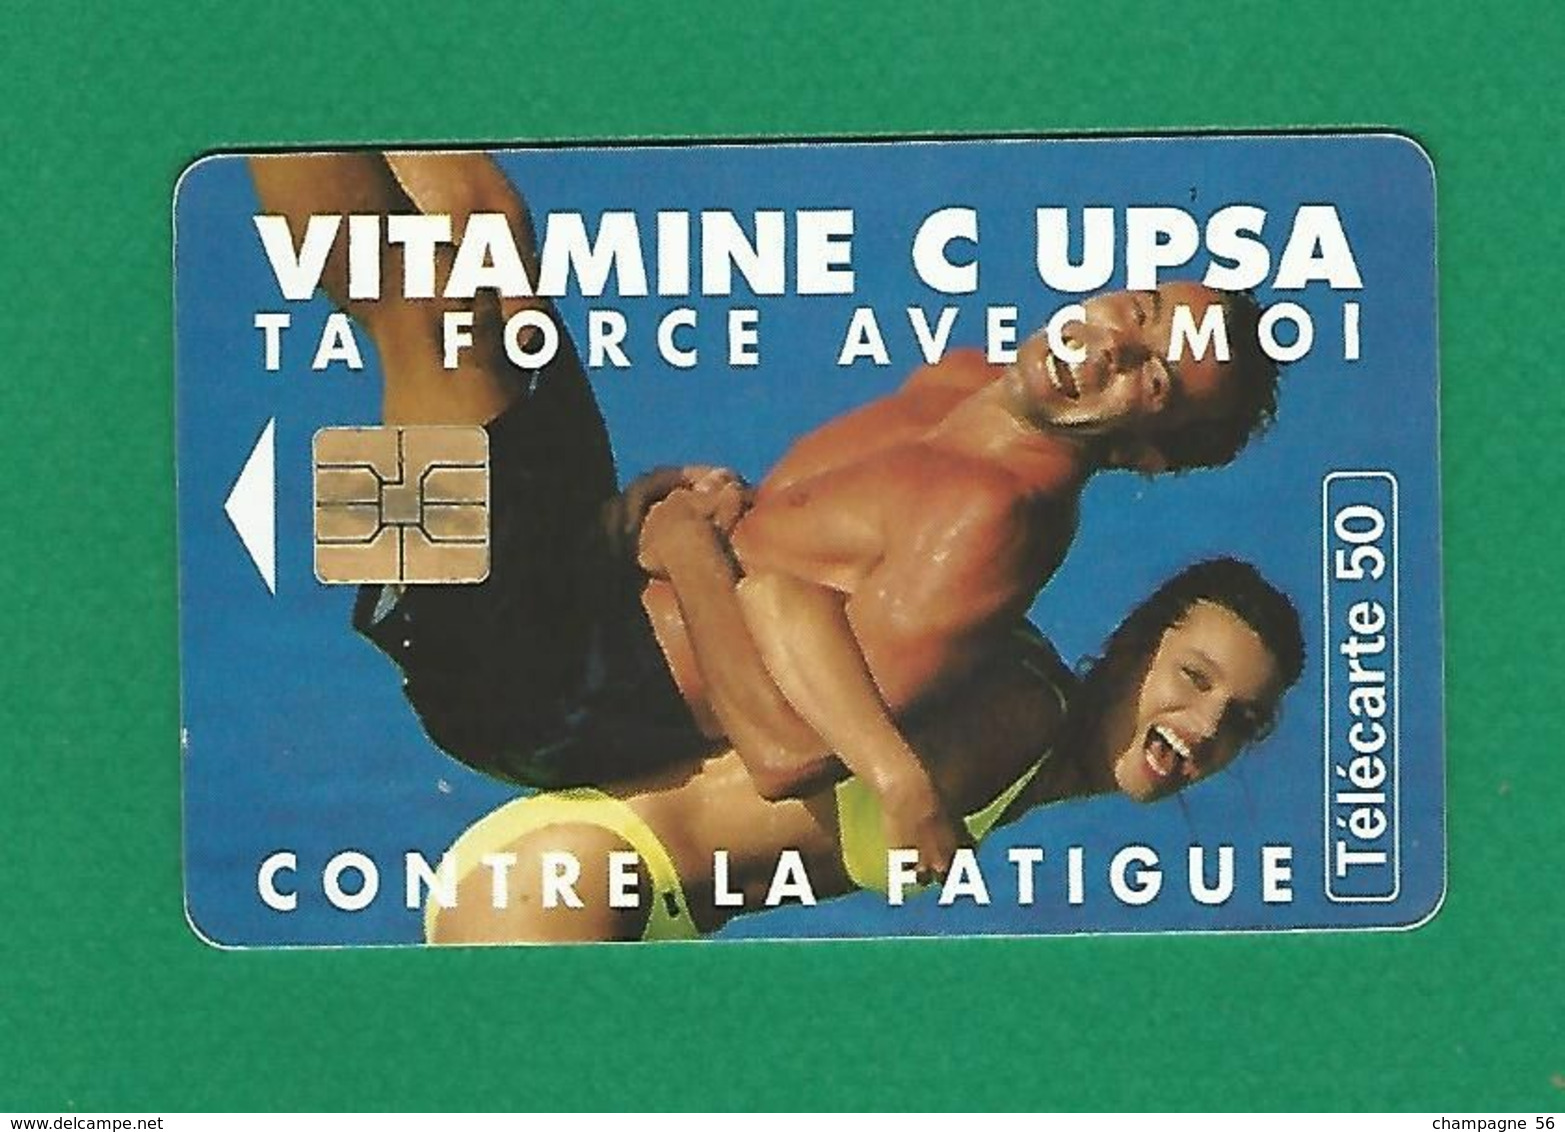 VARIÉTÉS FRANCE TÉLÉCARTE 1997 / 01  SO3  VITAMINE C UPSA     50 UNITES   UTILISÉE - Fehldrucke